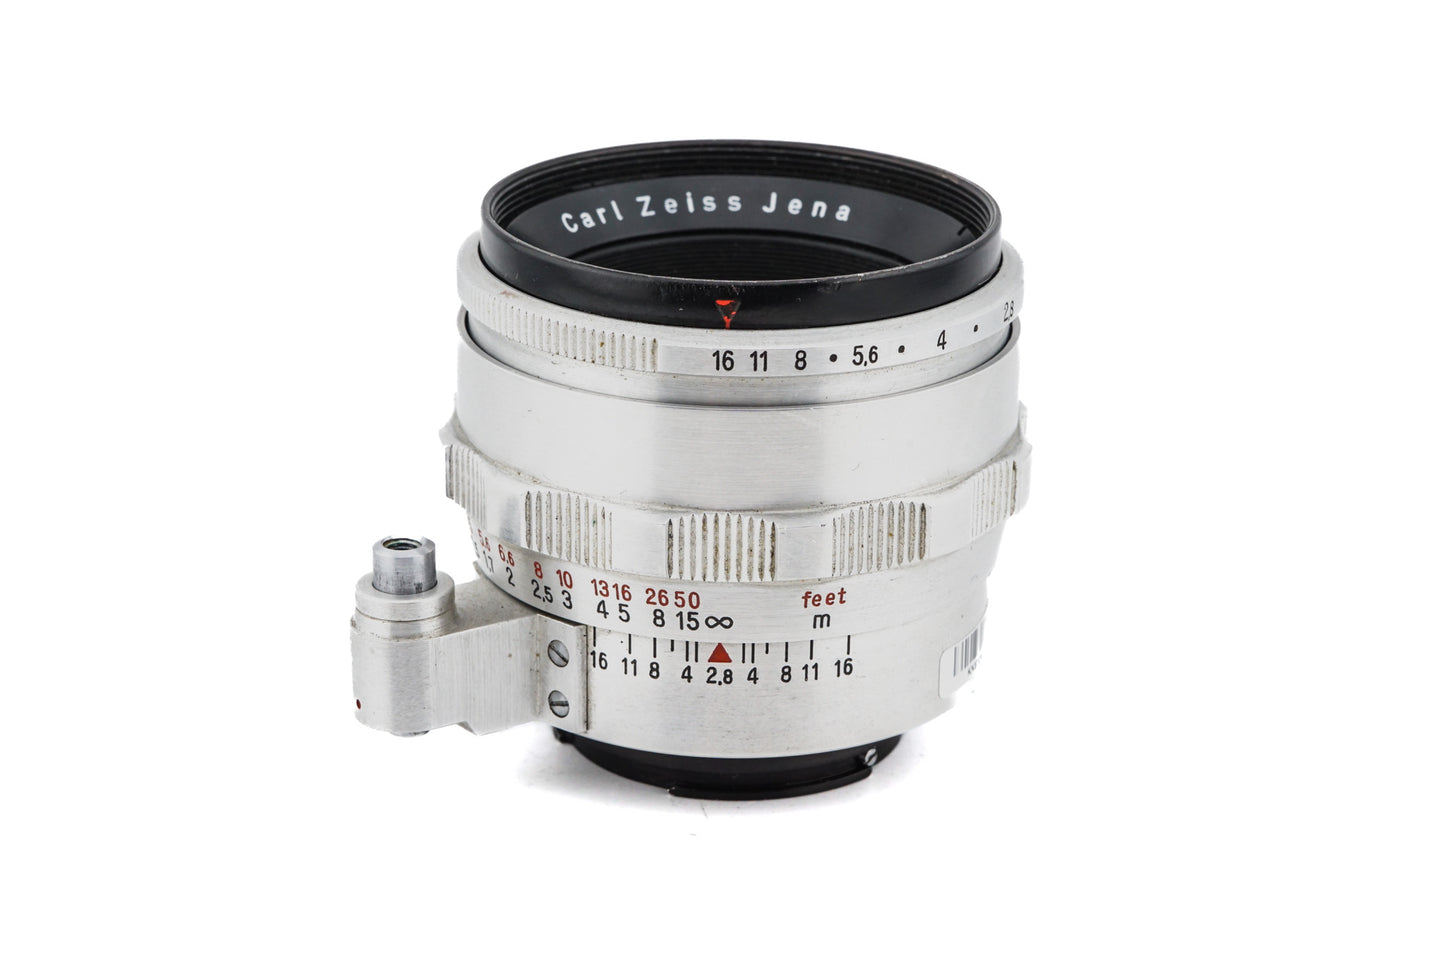 Carl Zeiss 50mm f2.8 Jena T - Lens